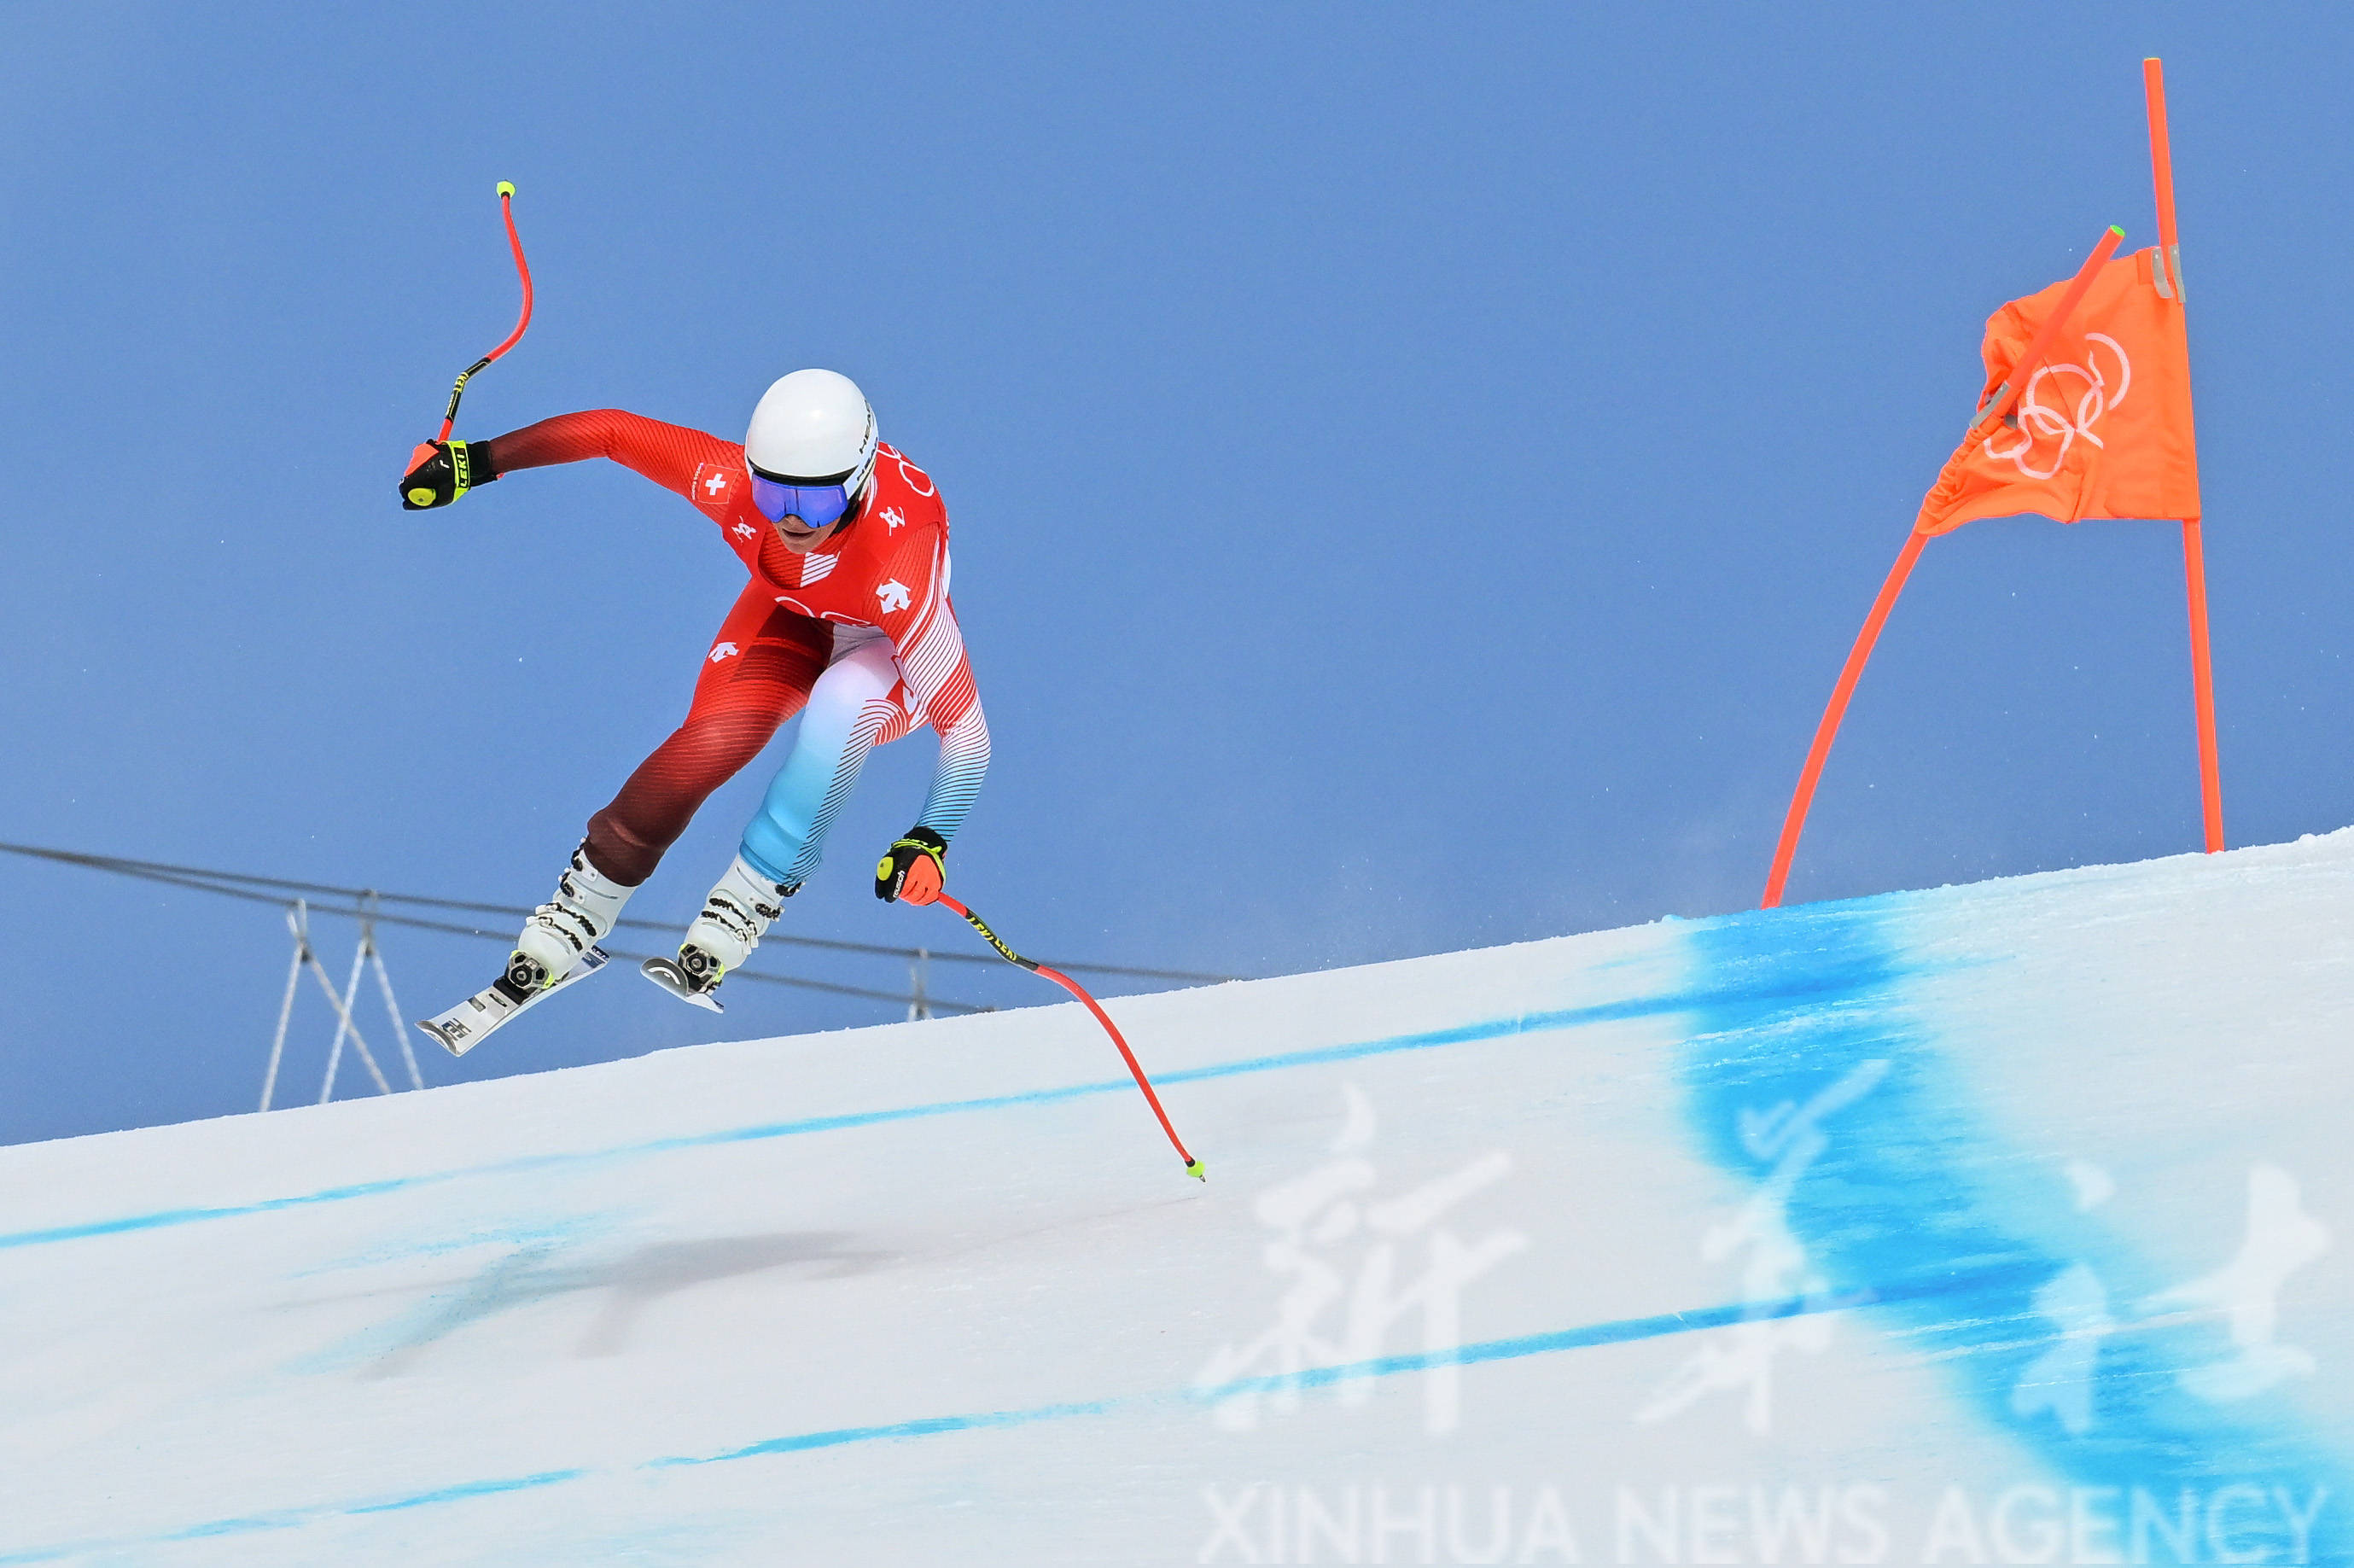 当日,北京2022年冬奥会高山滑雪女子滑降项目比赛在延庆国家高山滑雪